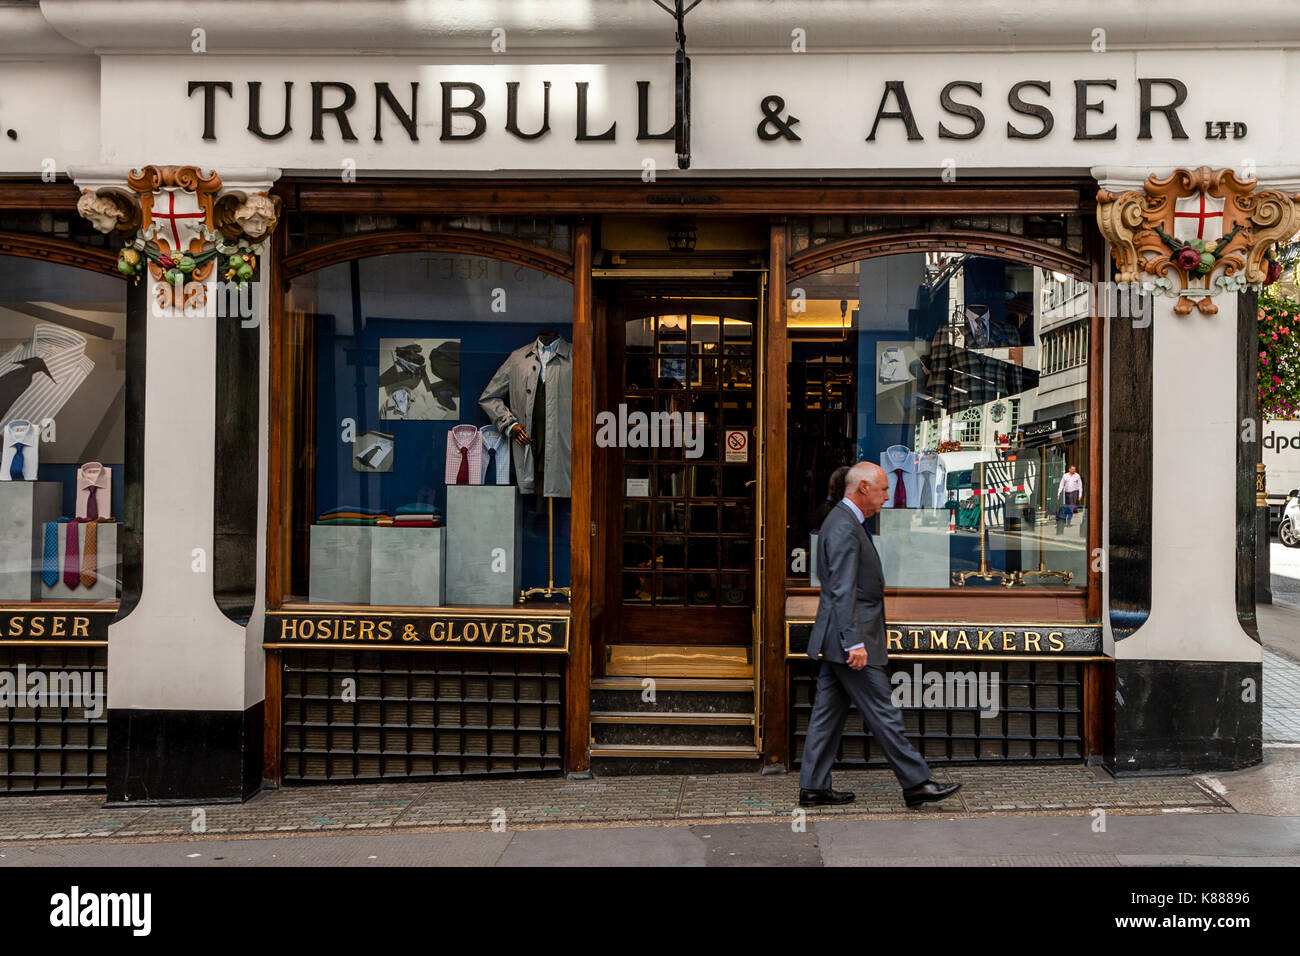 Turnbull & asser uomini negozio di abbigliamento in Jermyn Street, St James's, London, Regno Unito Foto Stock